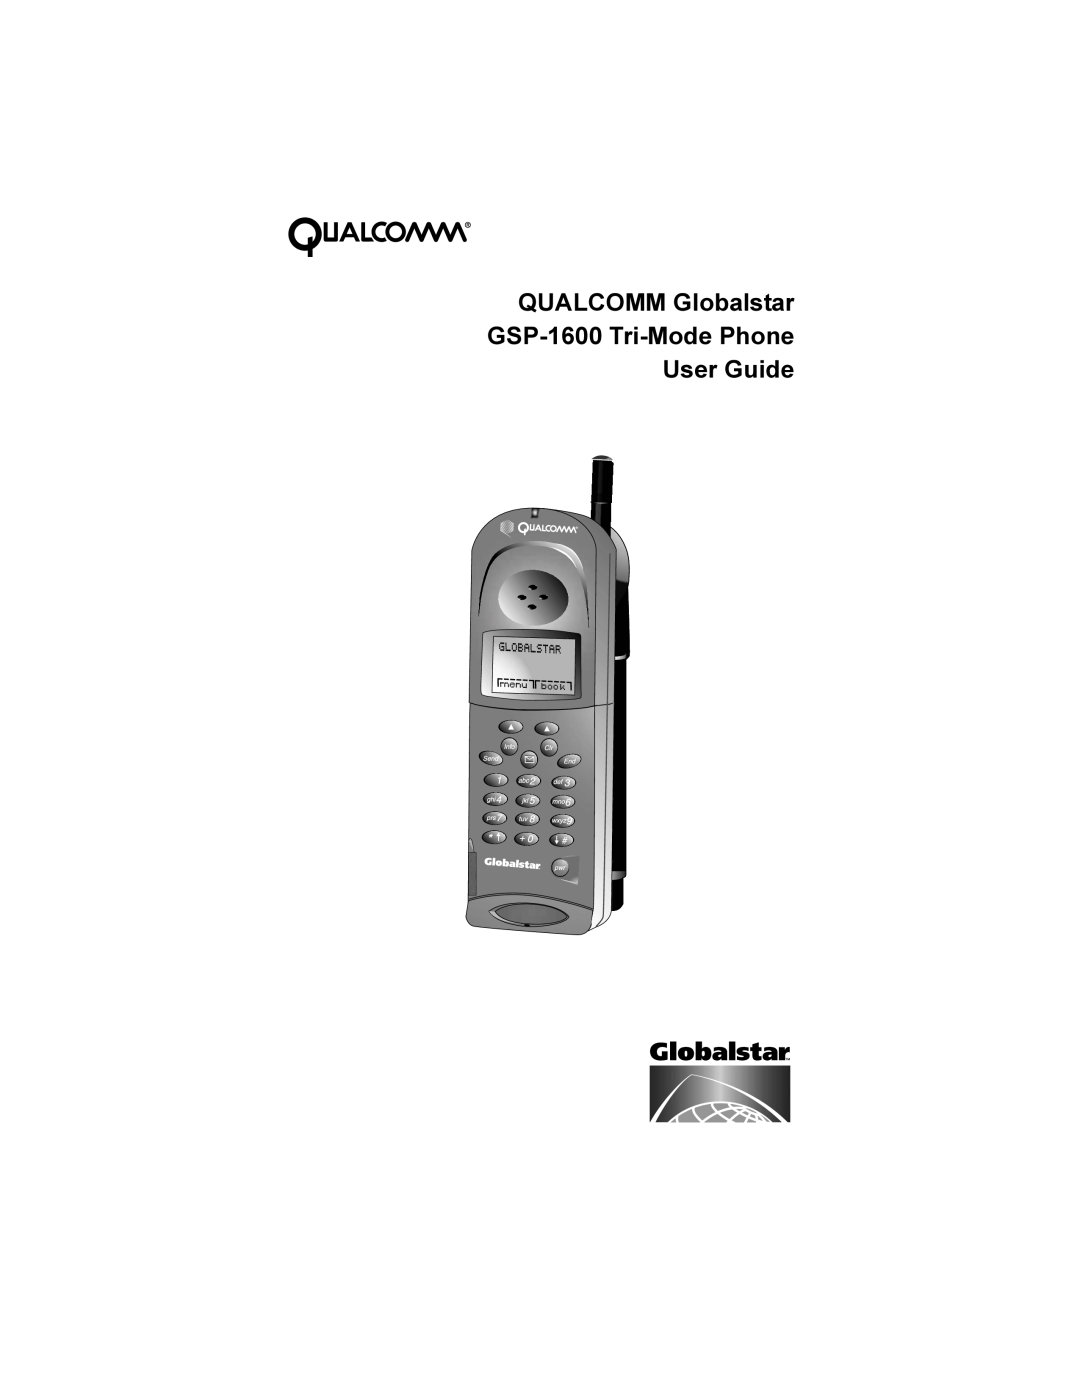 Qualcomm GSP-1600 manual 48$/&200*OREDOVWDU, 637UL0RGH3KRQH 8VHU*XLGH 